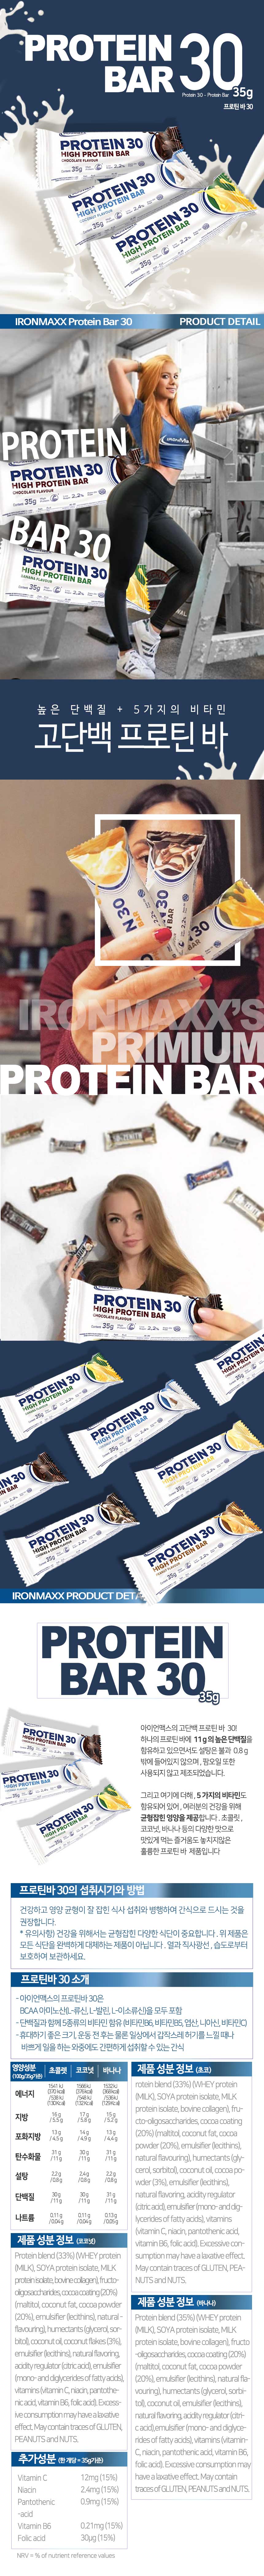 Protein30_152120.jpg